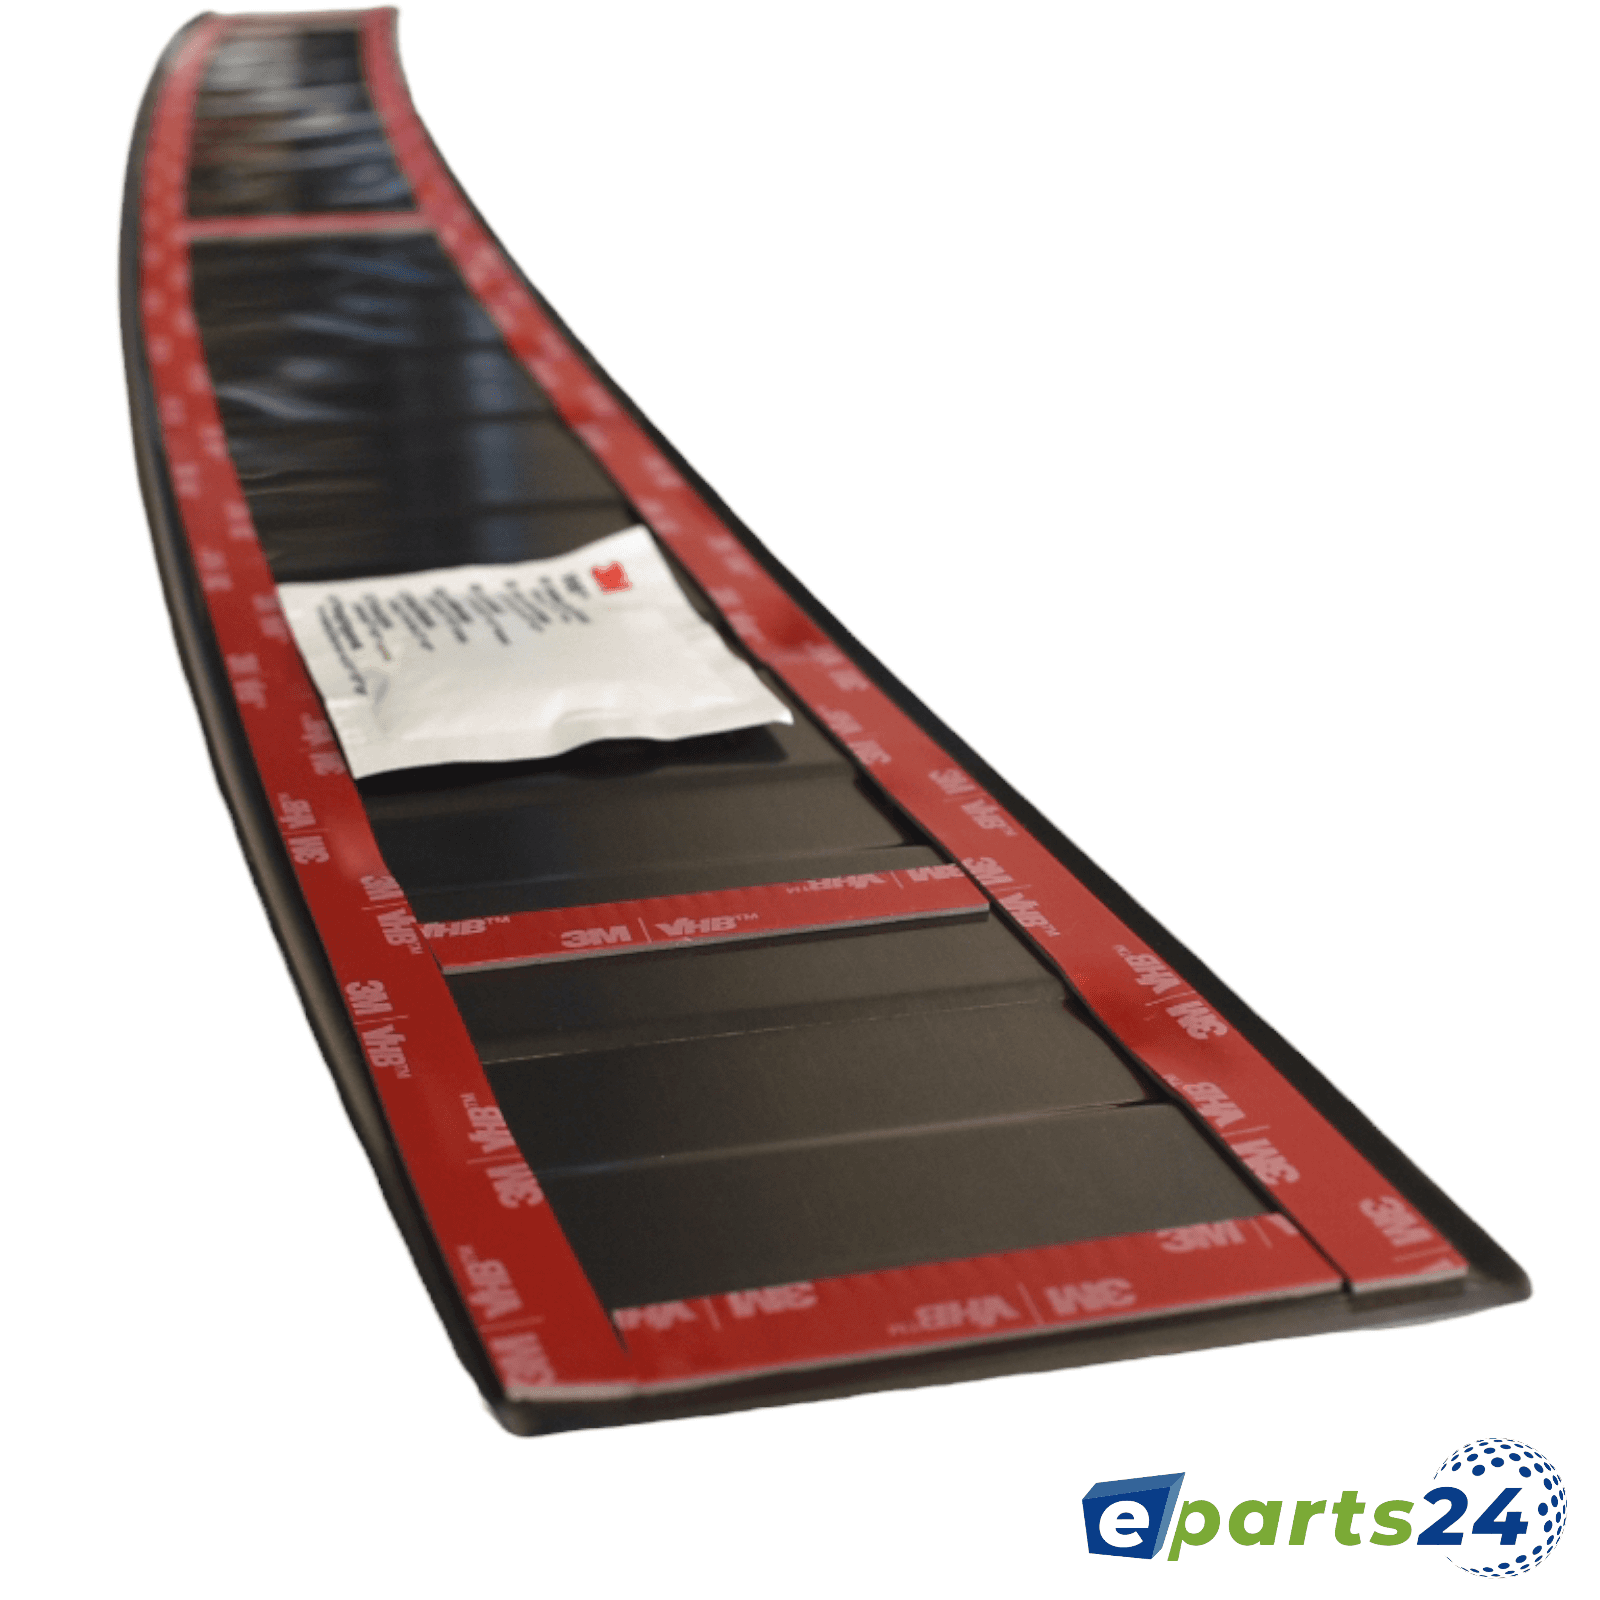 Ladekantenschutz Heckschutz für Seat Tarraco matt pul schwarz E-Parts24 ab 2018- –